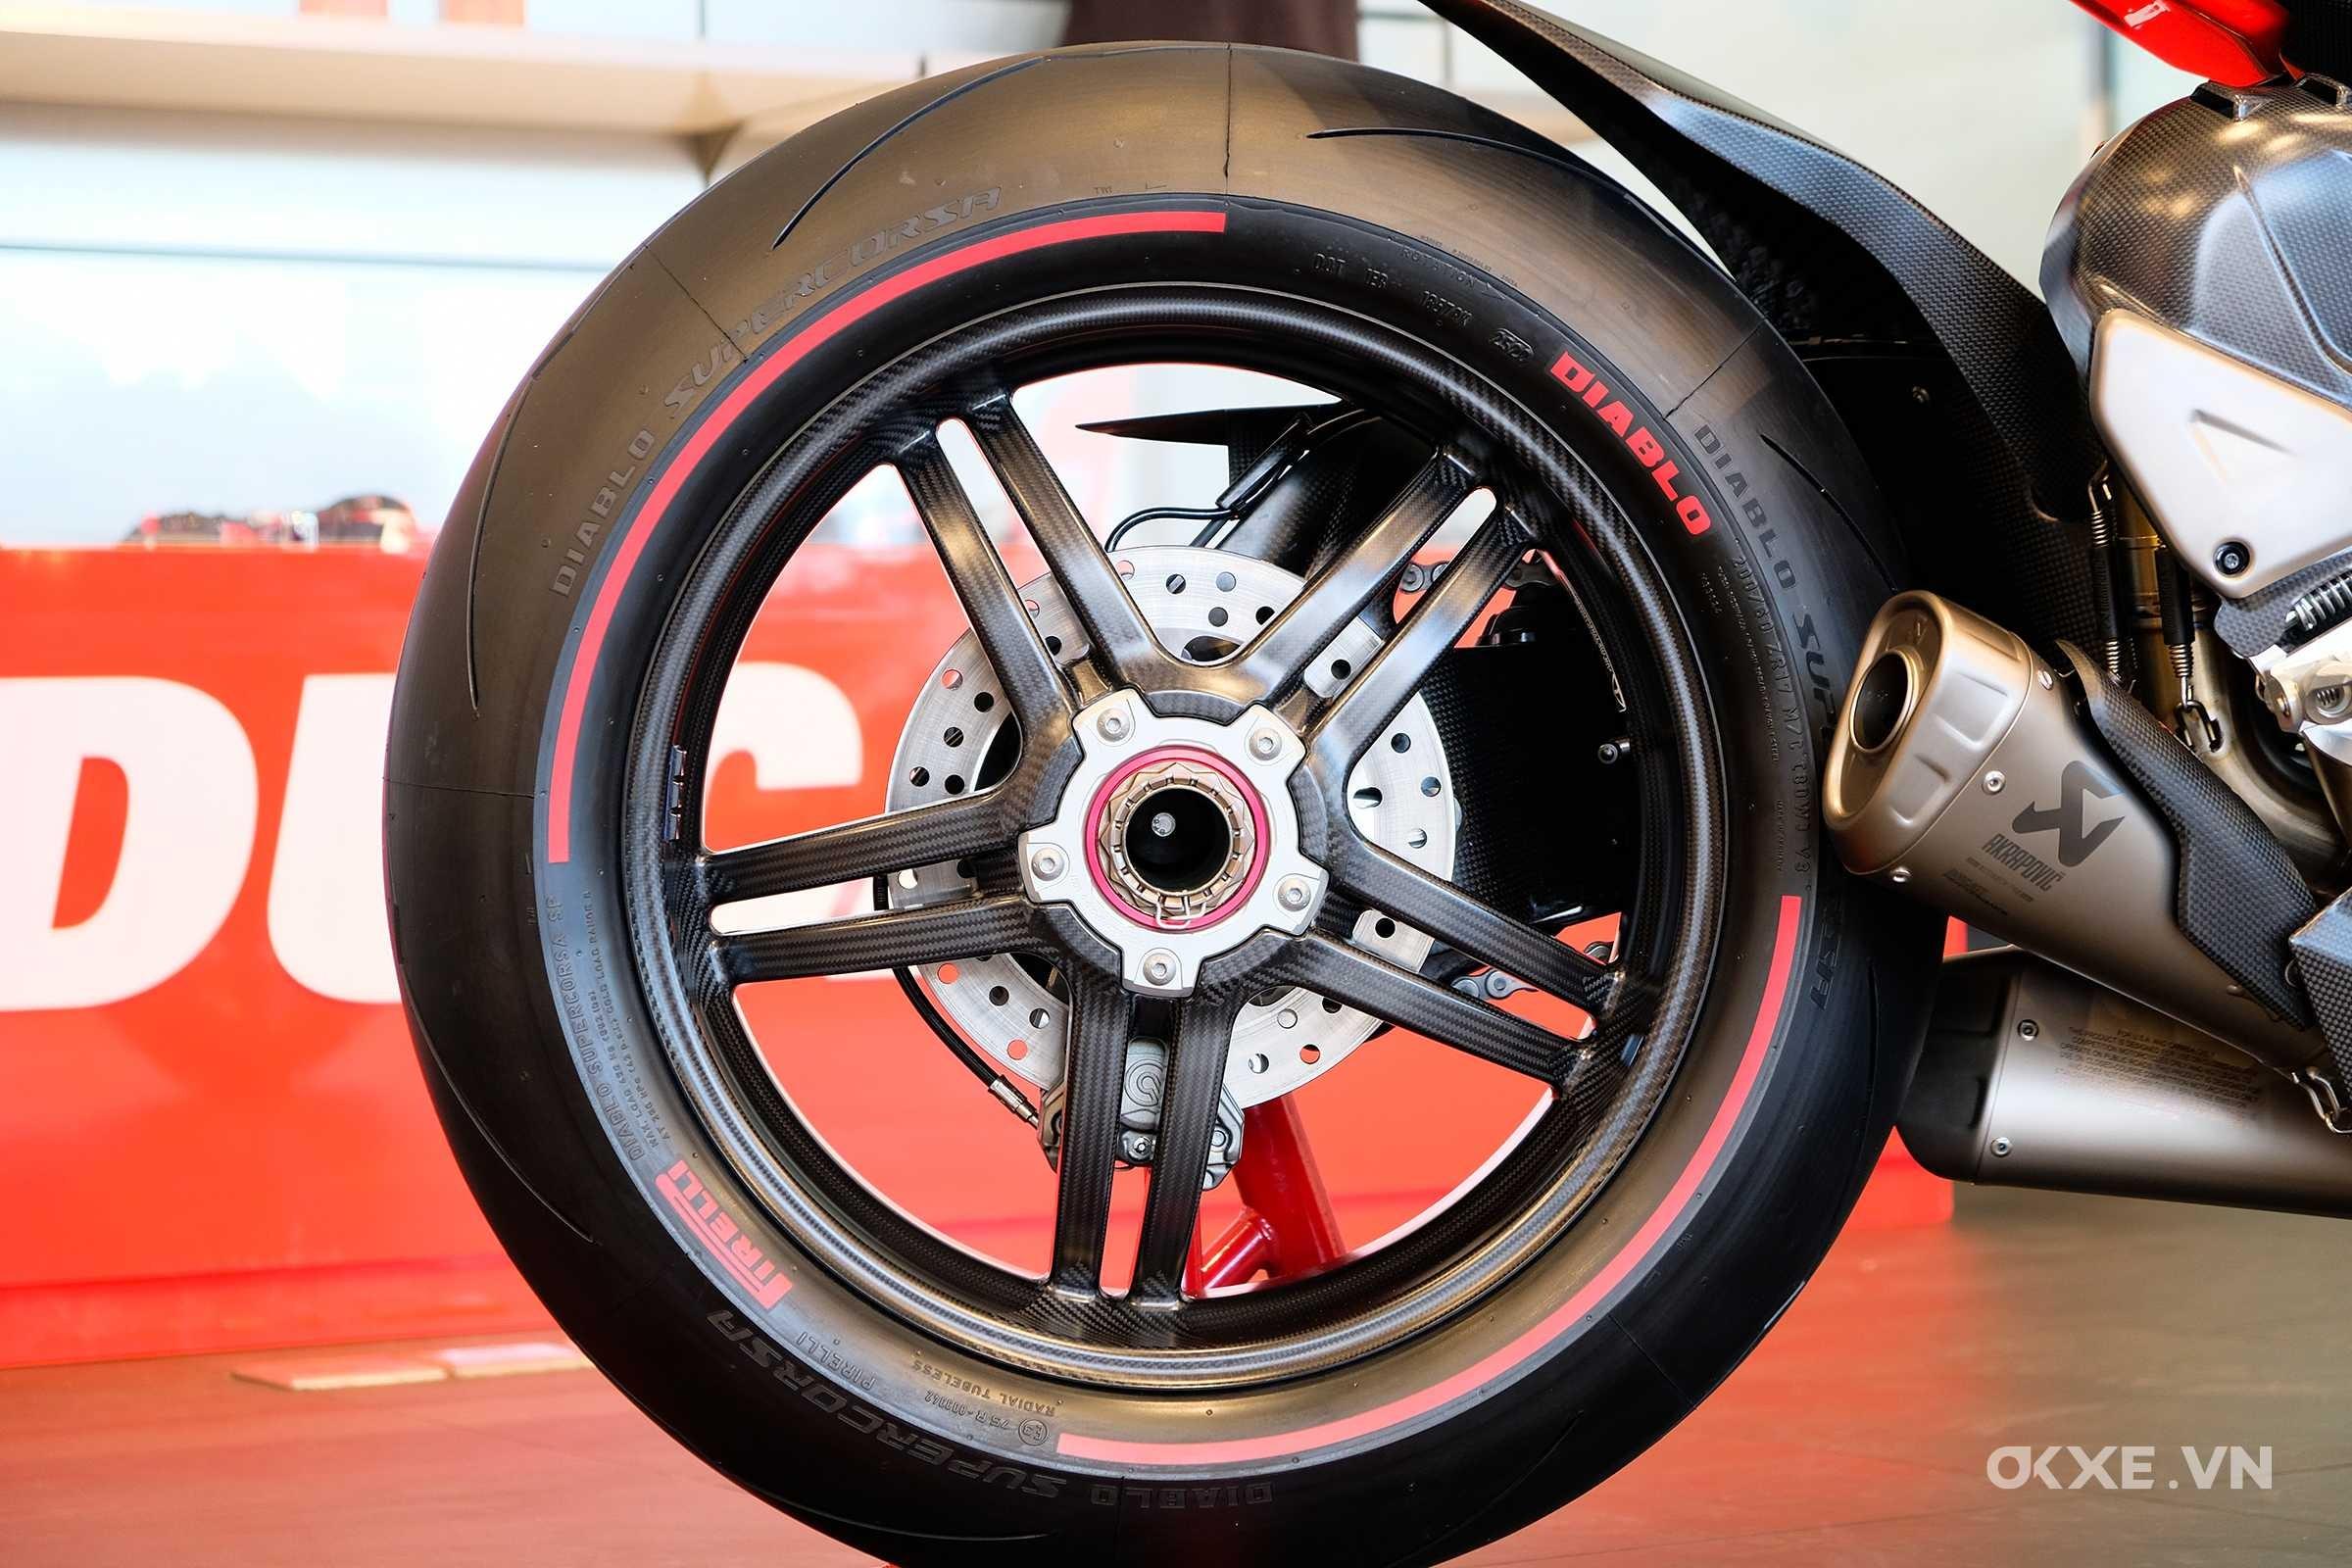 Siêu mô tô Ducati Superleggera V4 độc nhất Việt Nam giá gần 6 tỷ đồng